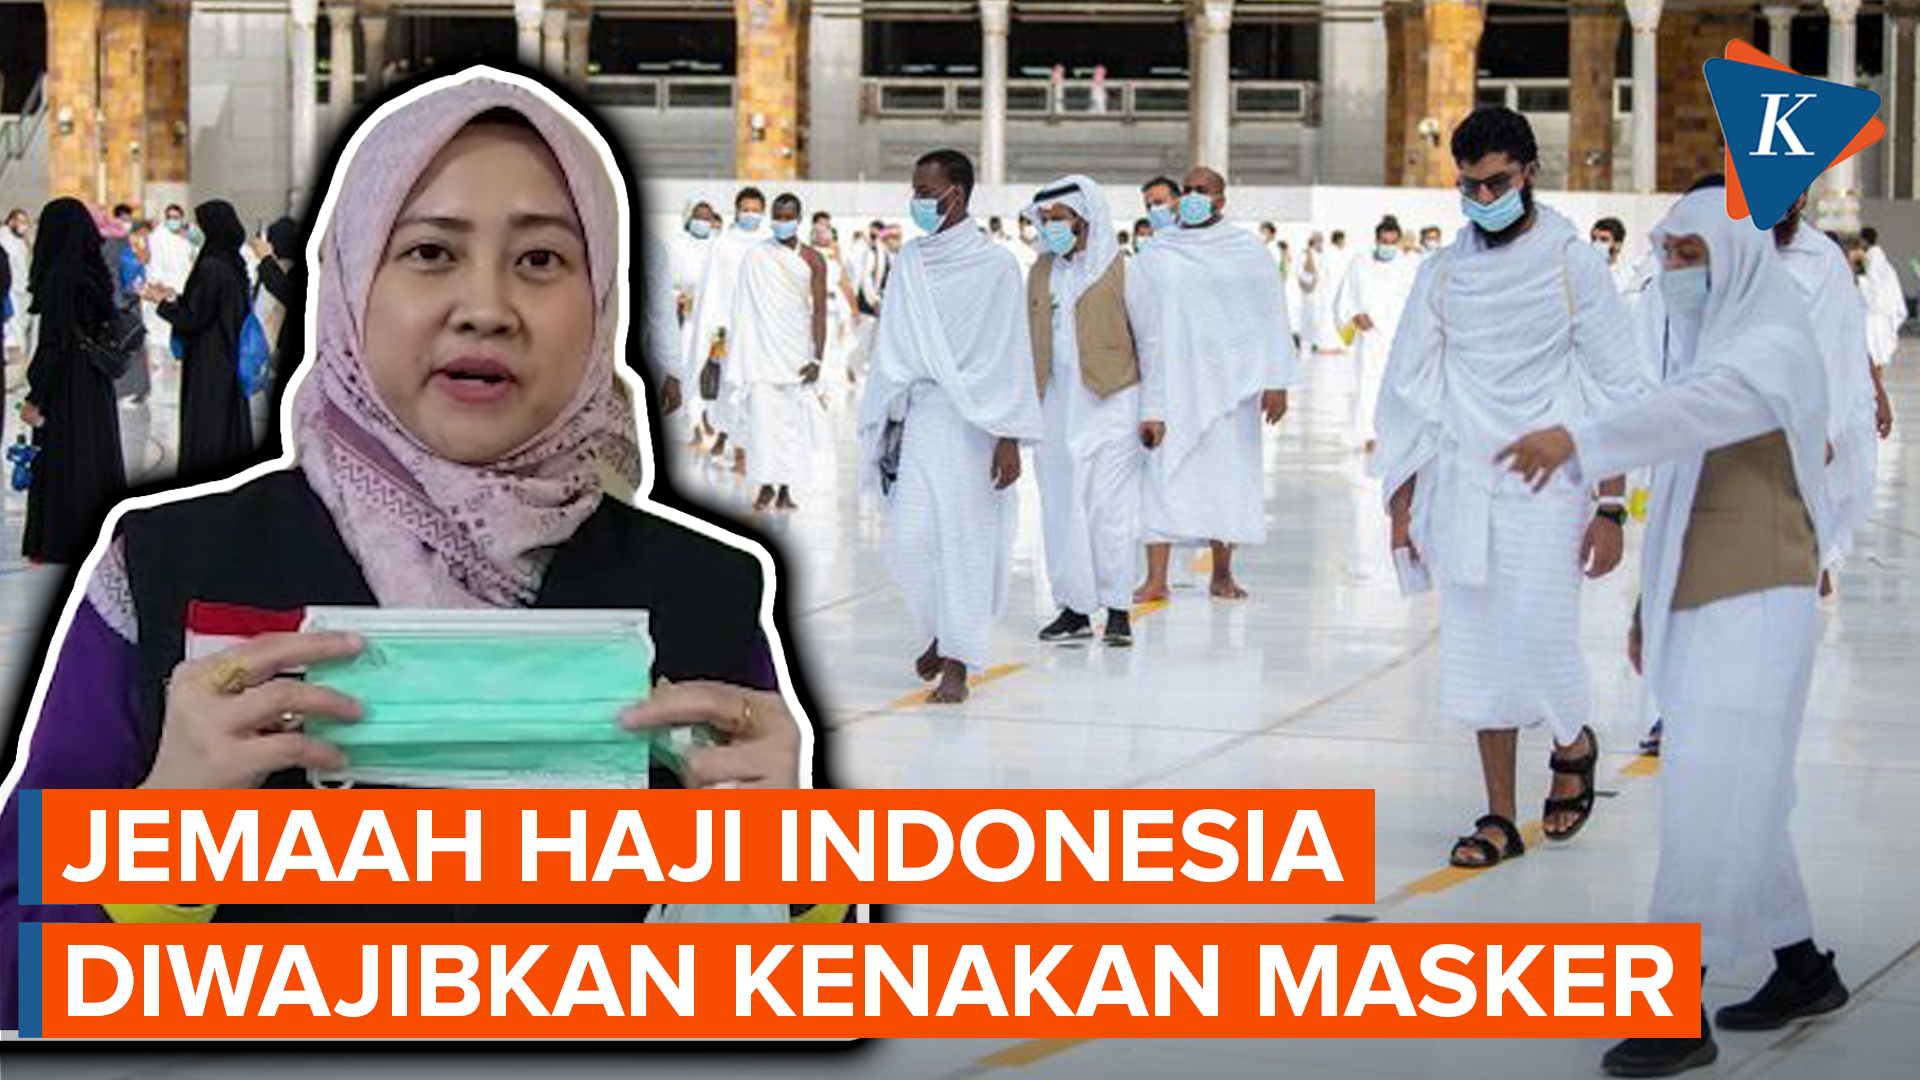 Mengapa Jemaah Haji Indonesia Tetap Diwajibkan Kenakan Masker? Ini Alasannya